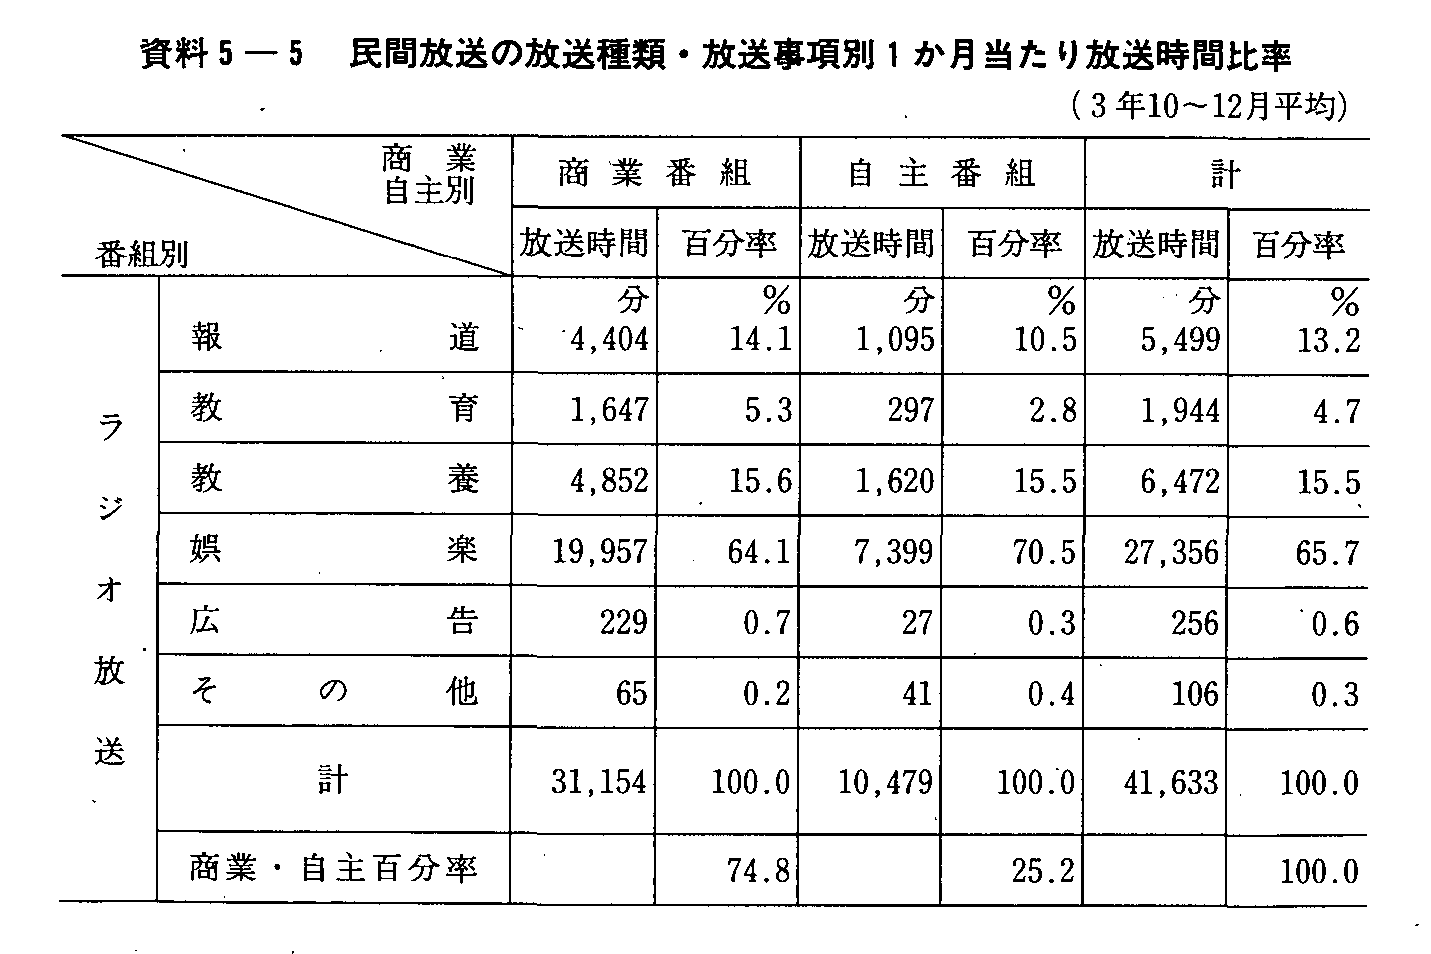 5-5 ԕ̕ށE1Ԕ䗦(3N10`12)(1)